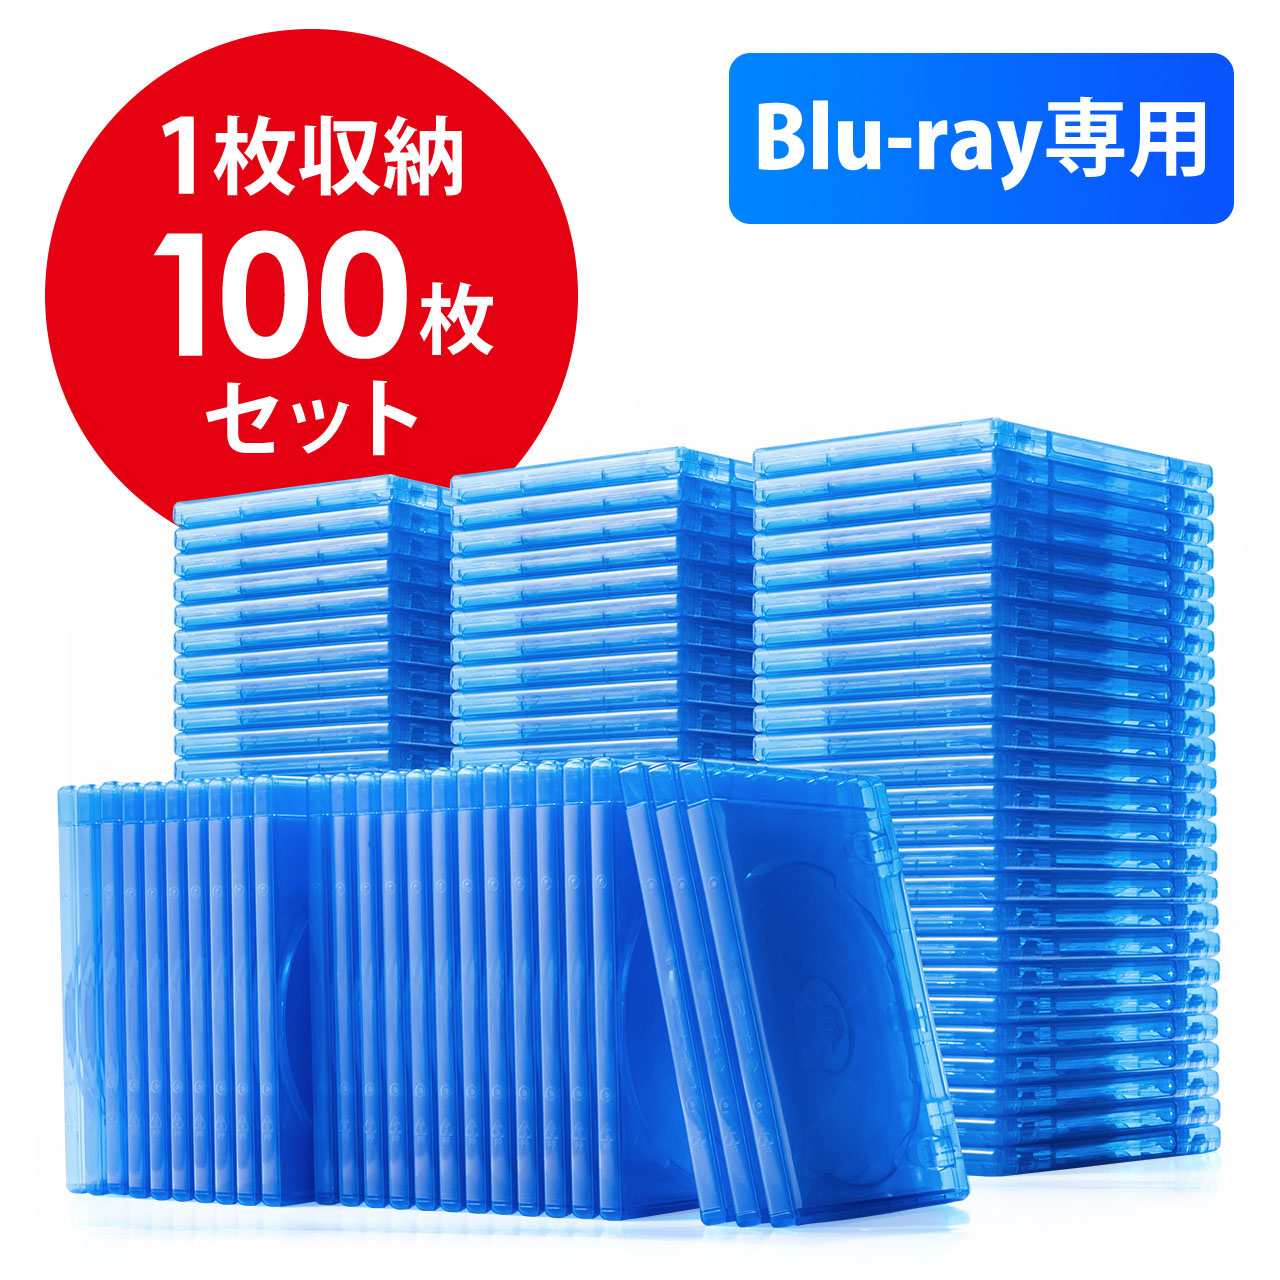 ブルーレイディスクケース 標準サイズ Blu Ray 1枚収納 100枚セット 0 Fcd055 100の販売商品 通販ならサンワダイレクト